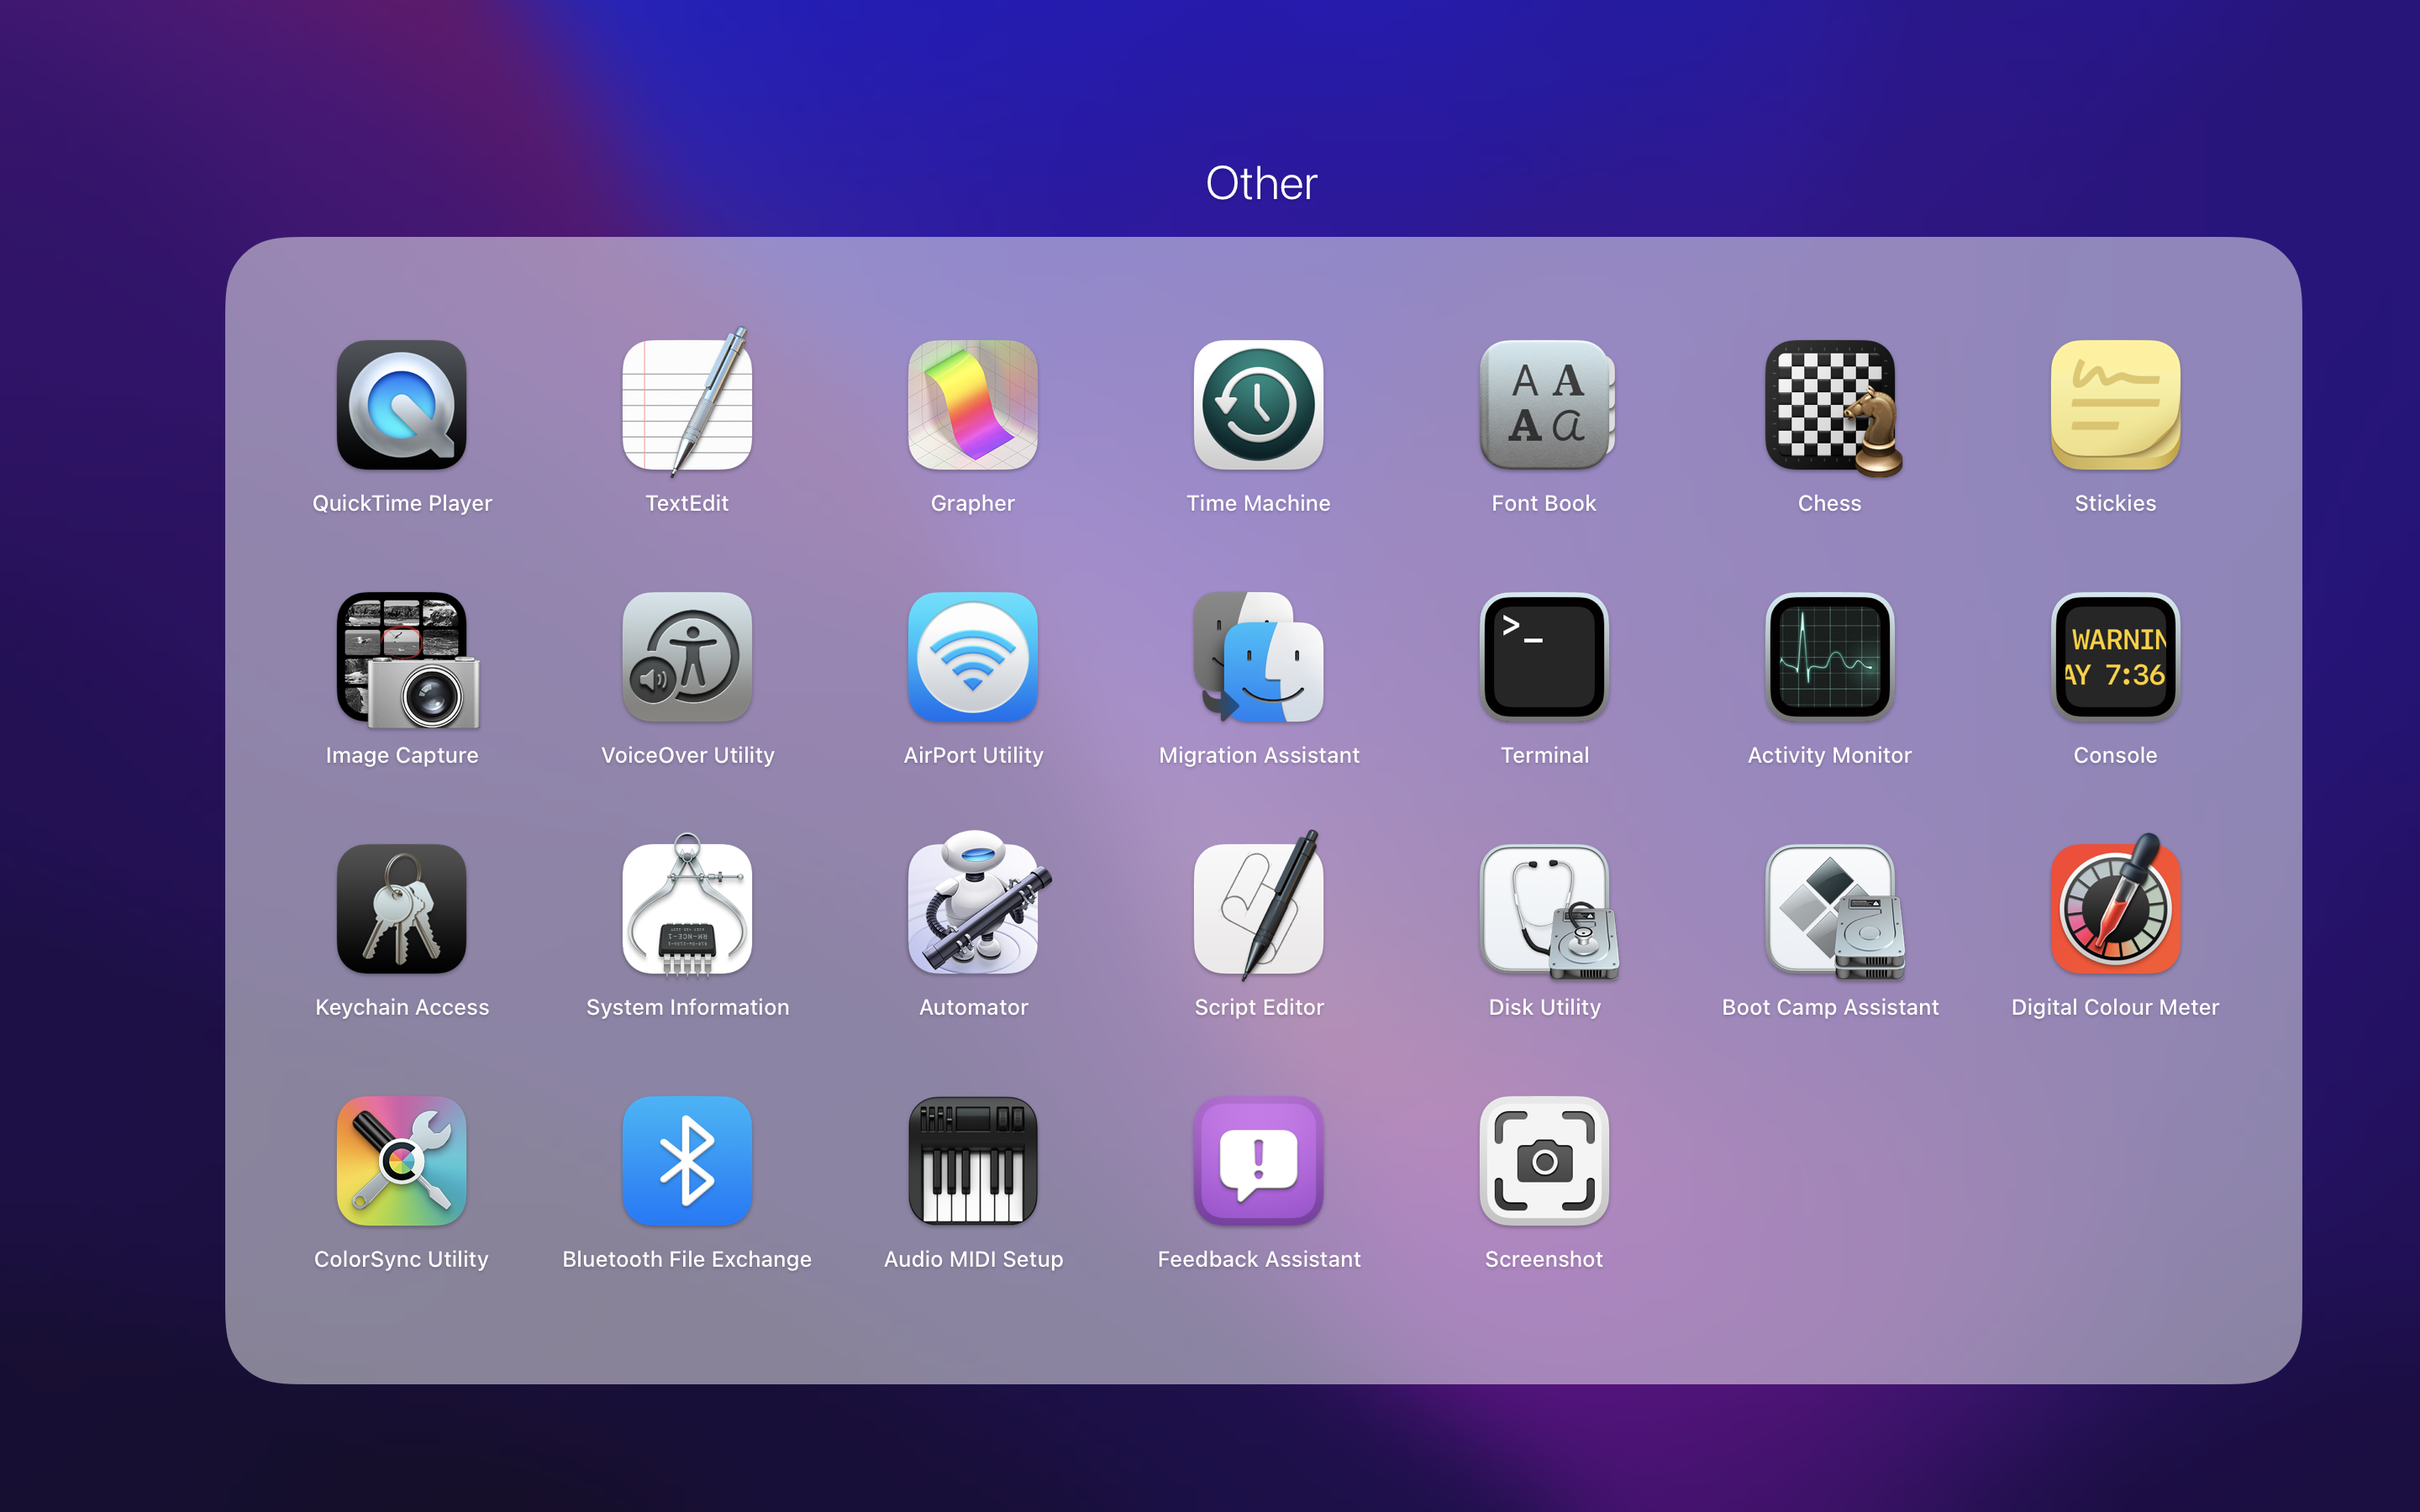 Screenshot on a Mac